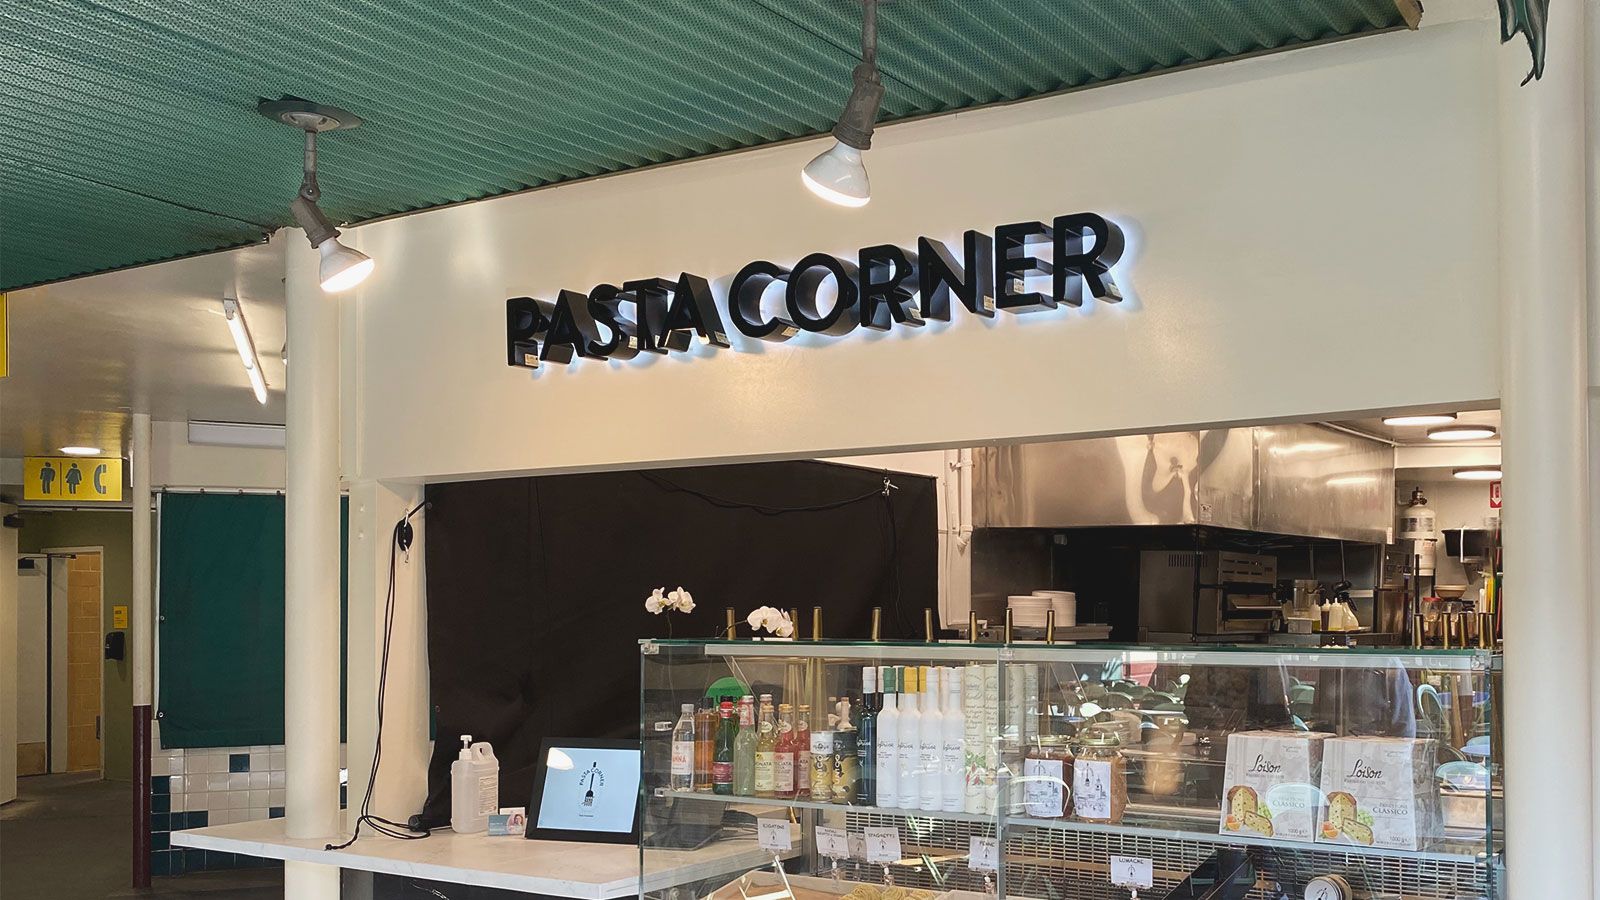 pasta corner backlit letters